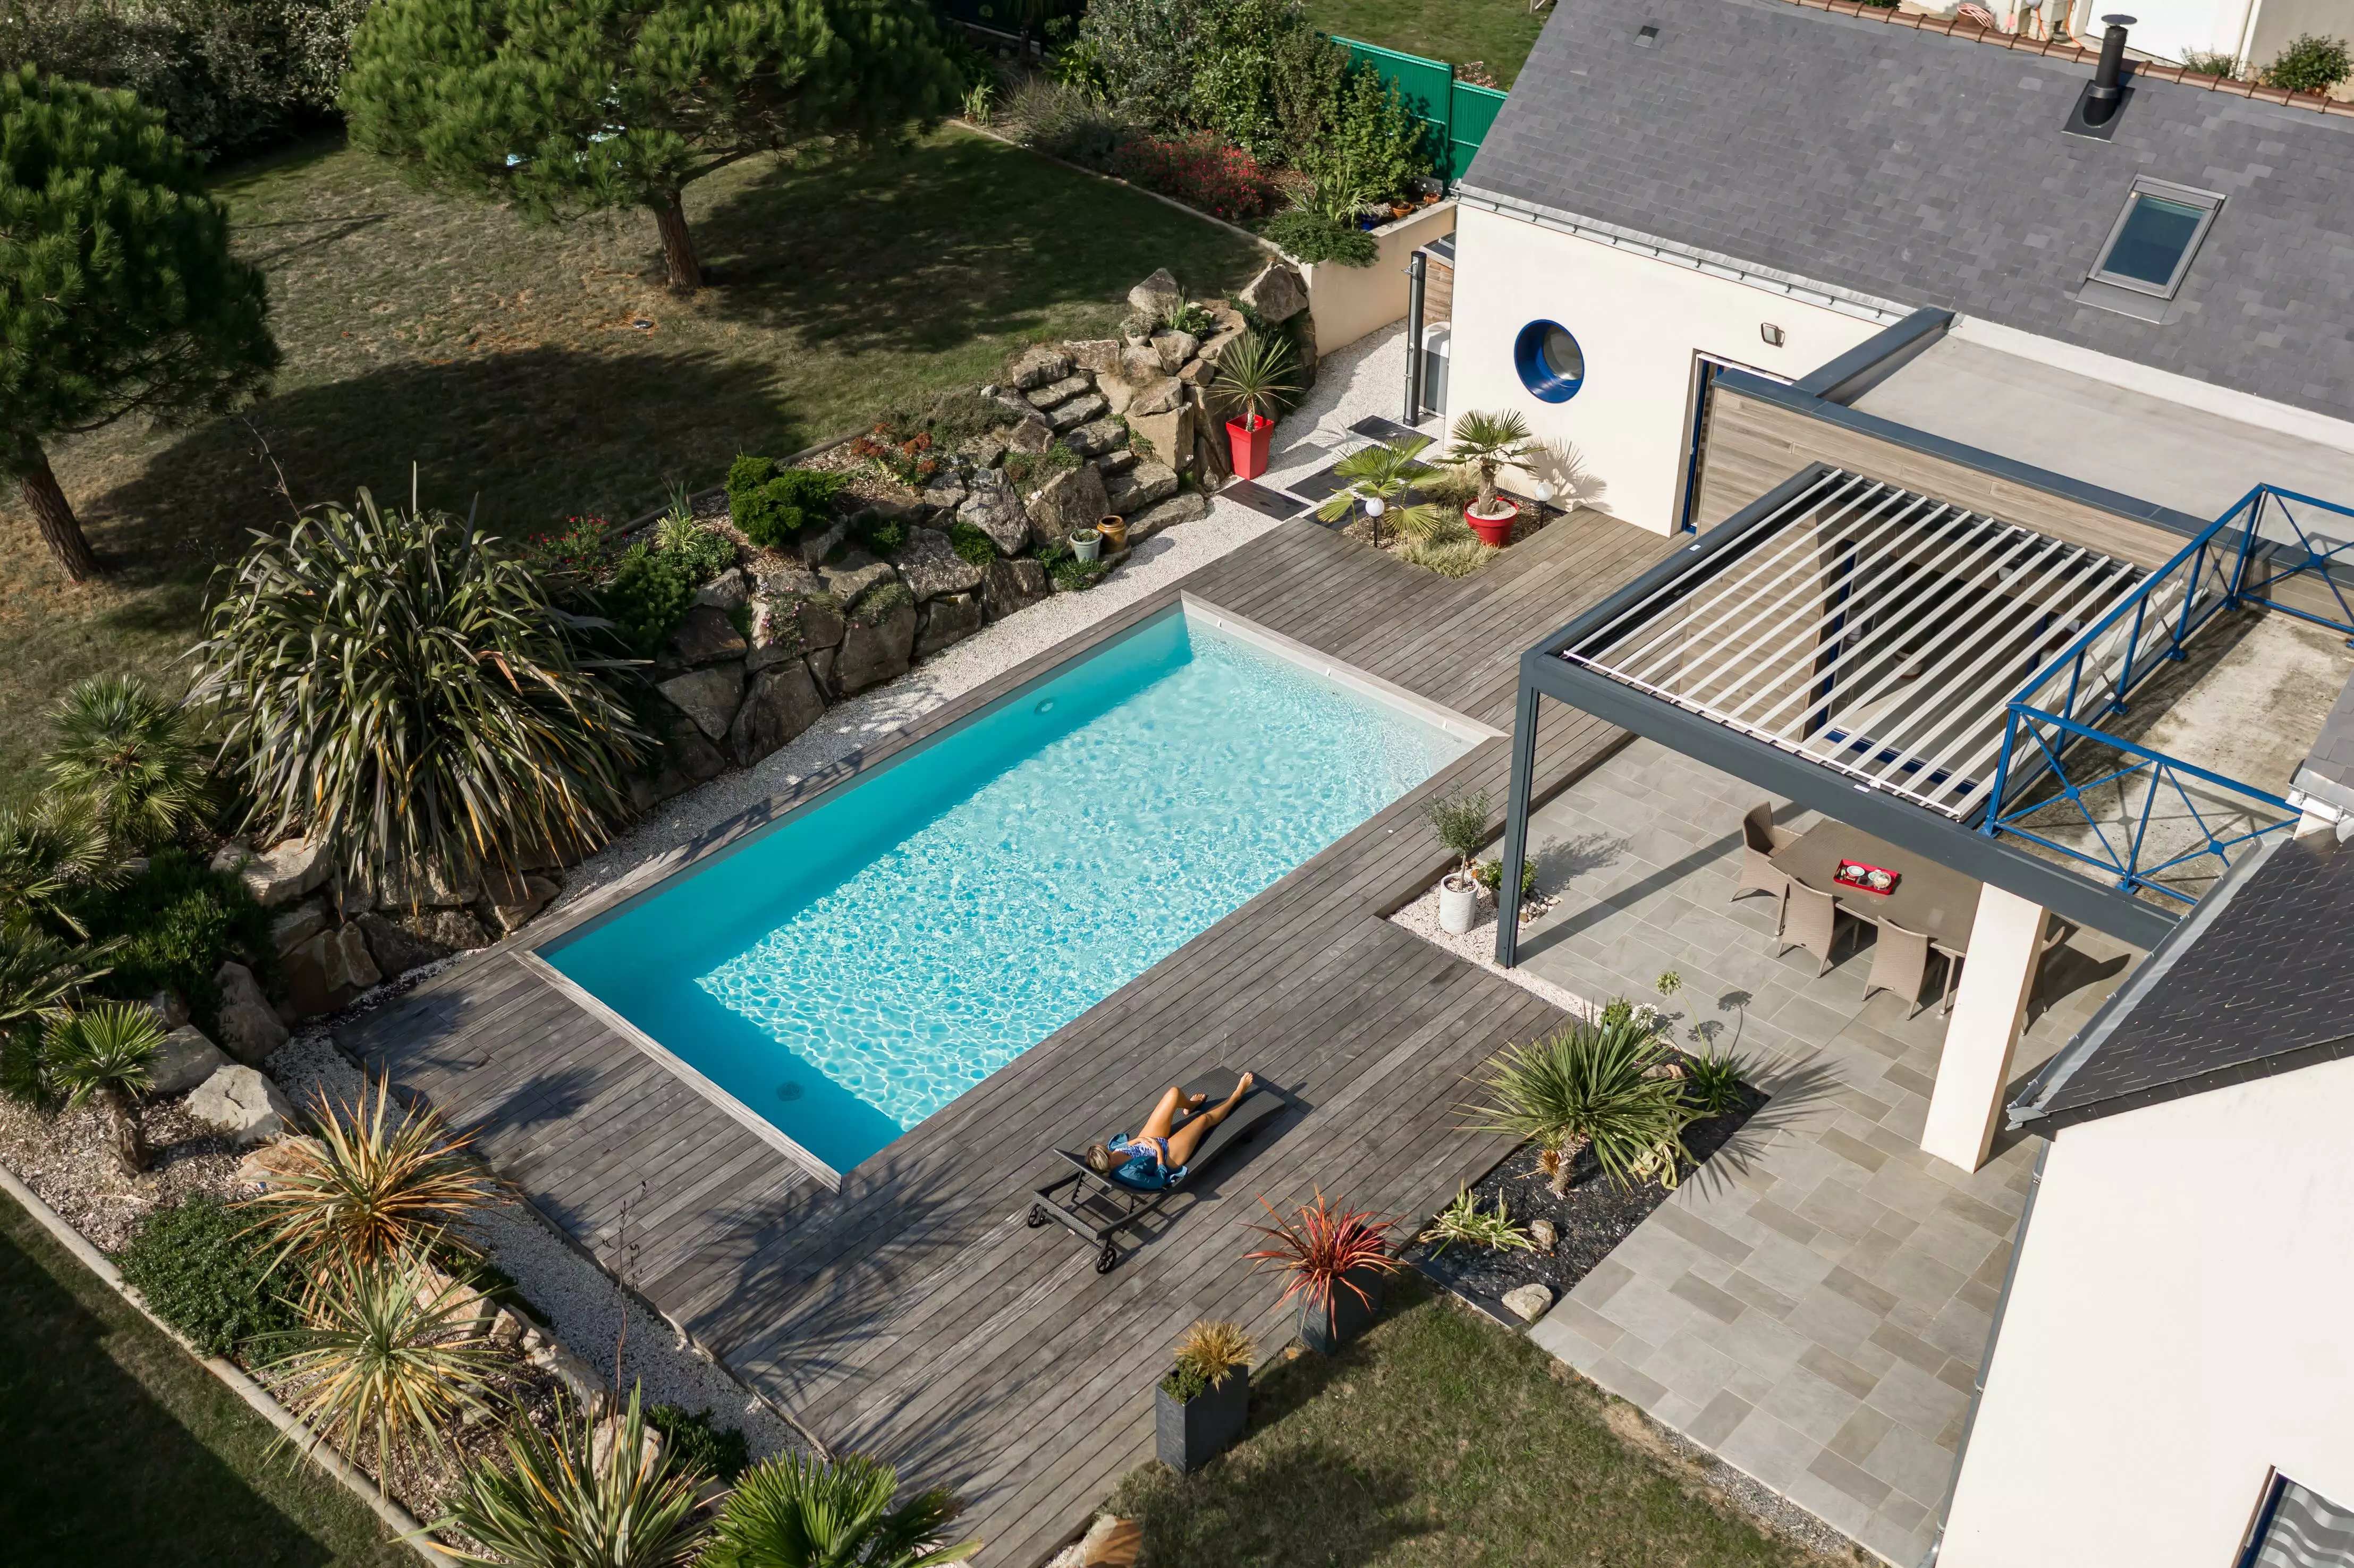 Une construction contemporaine où la piscine est l'élément central, entourée d'une terrasse qui mène à un paysage rocheux parsemé de plantes exotiques.